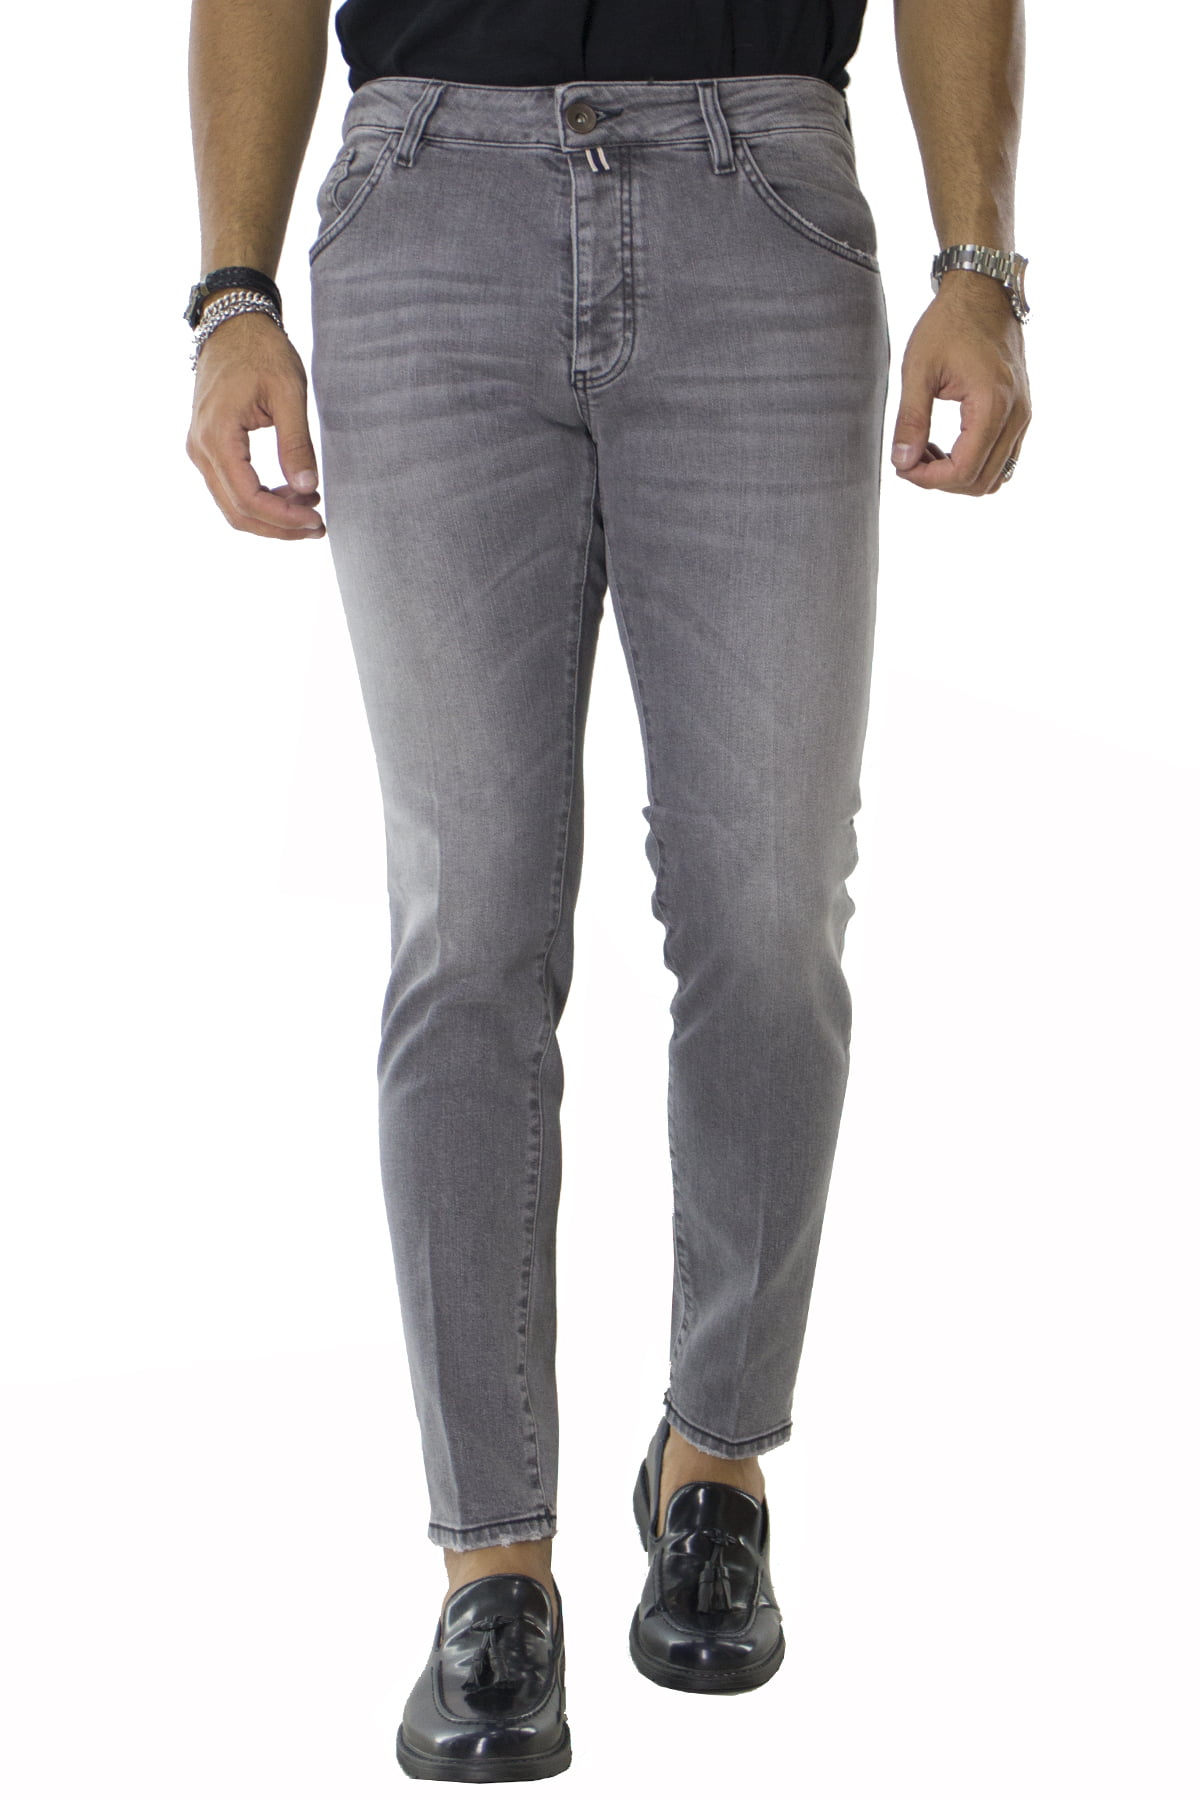 Jeans uomo slim grigio chiaro elasticizzato con sabbiature 5 tasche